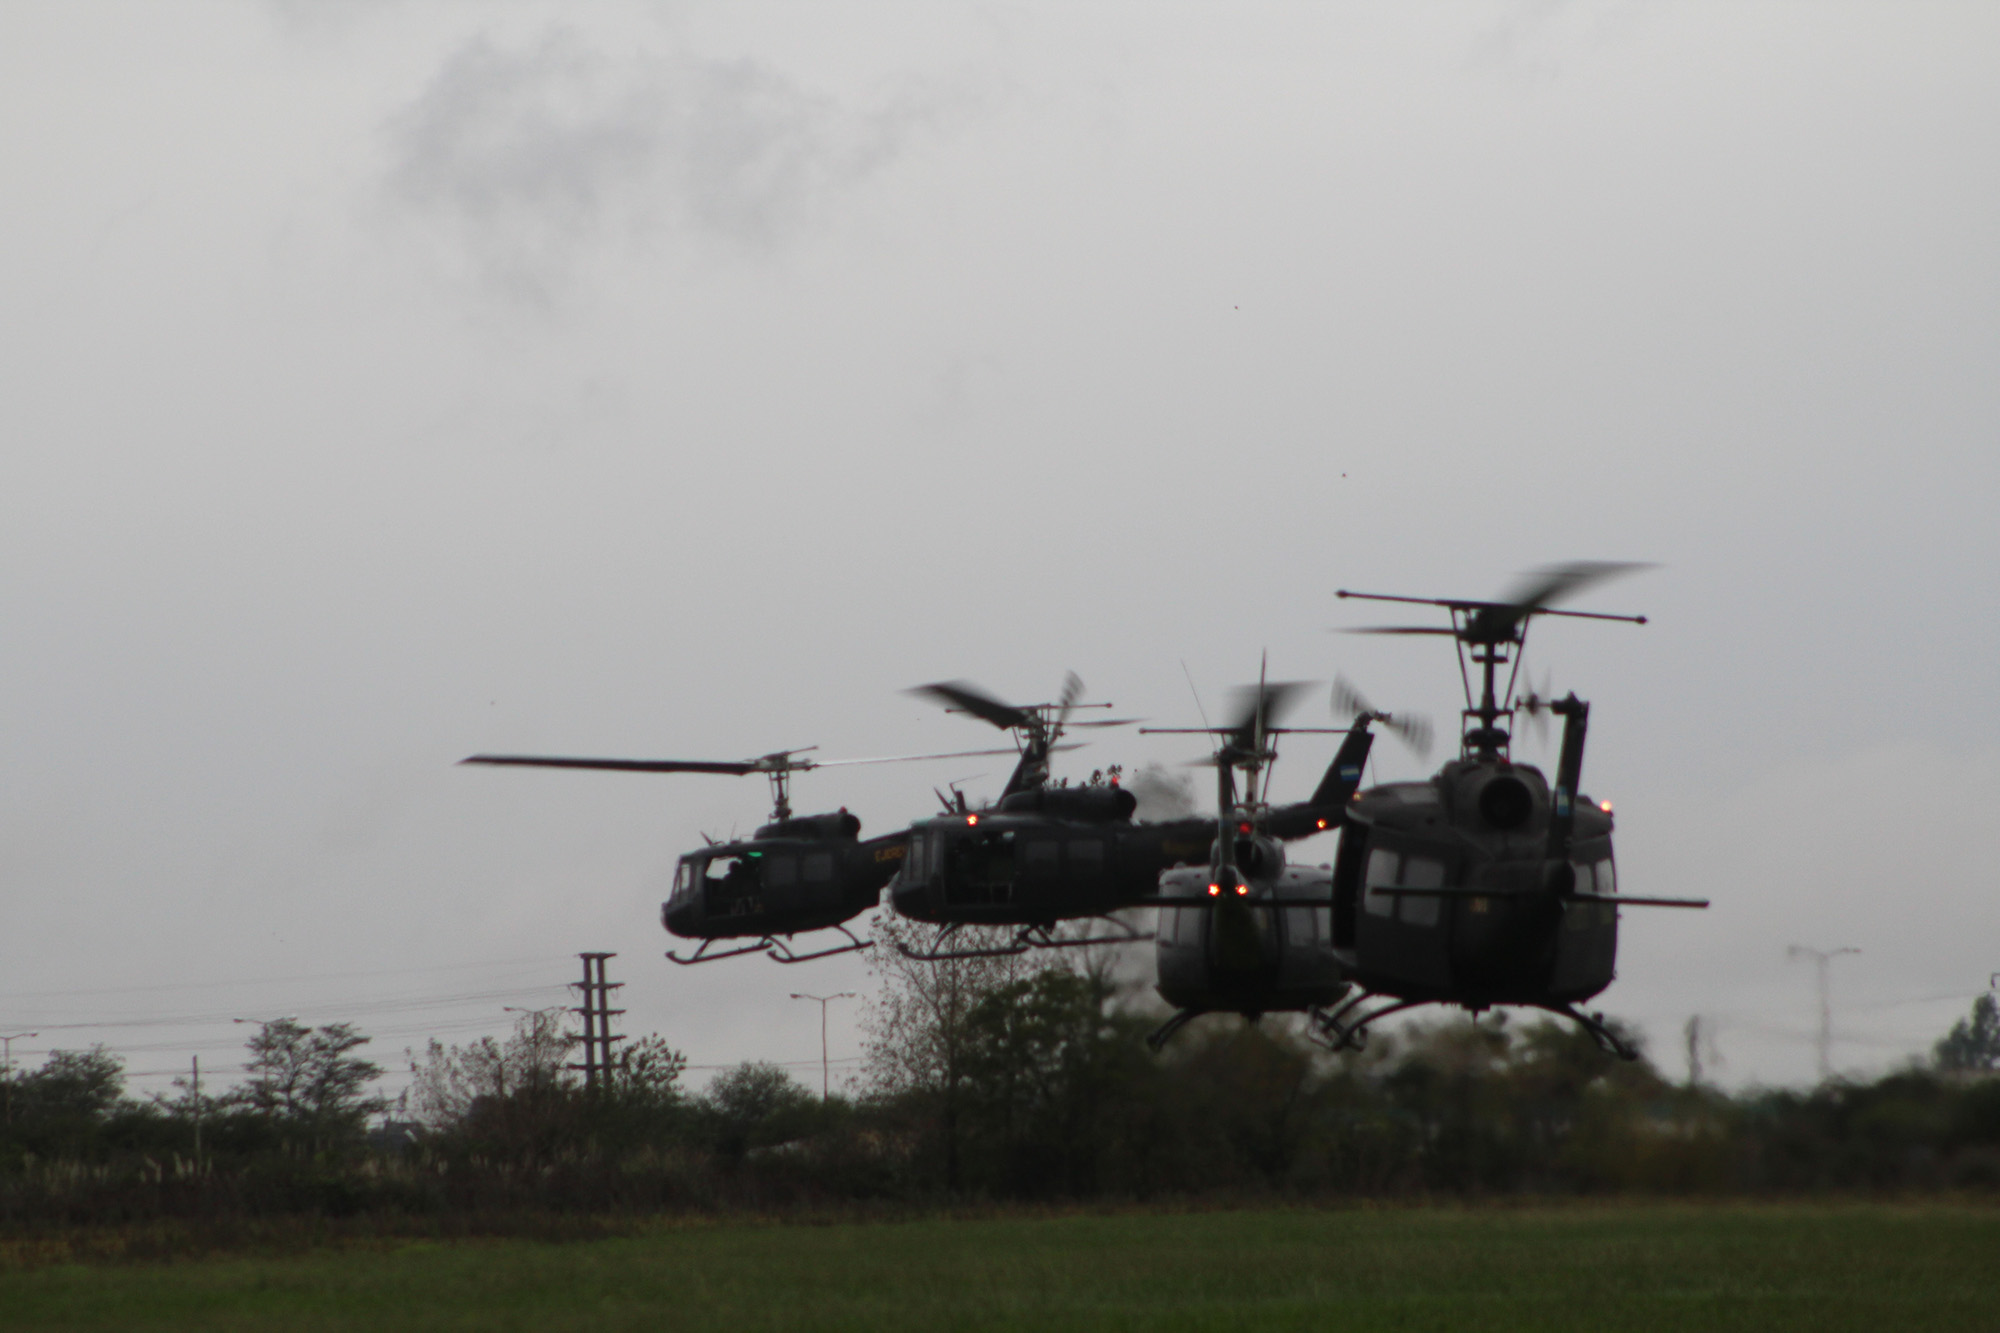 Cuatro helicópteros en el aire realizando ejercicio